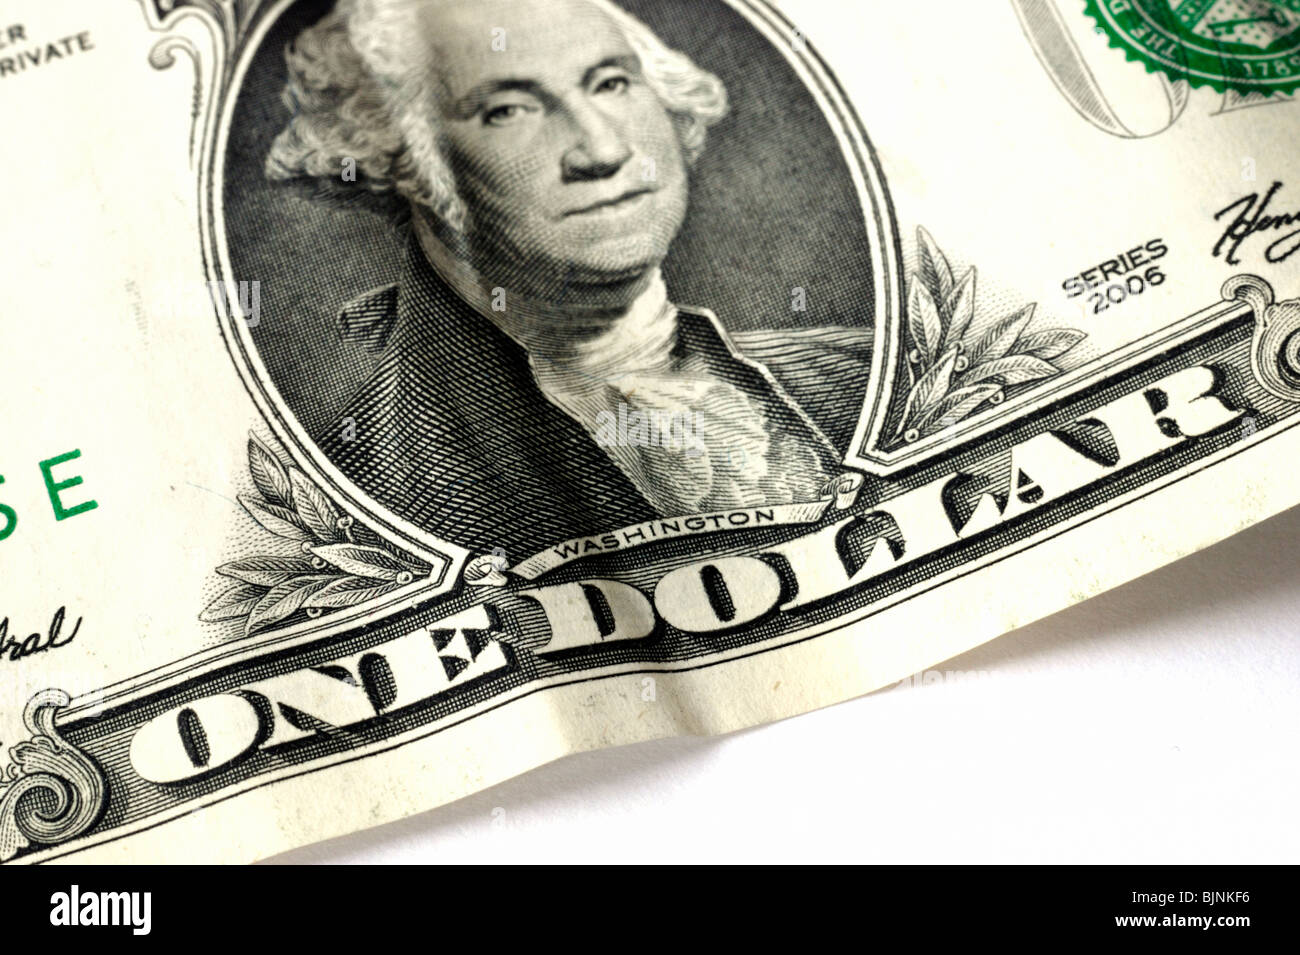 Portrait de George Washington sur un dollar bill Banque D'Images